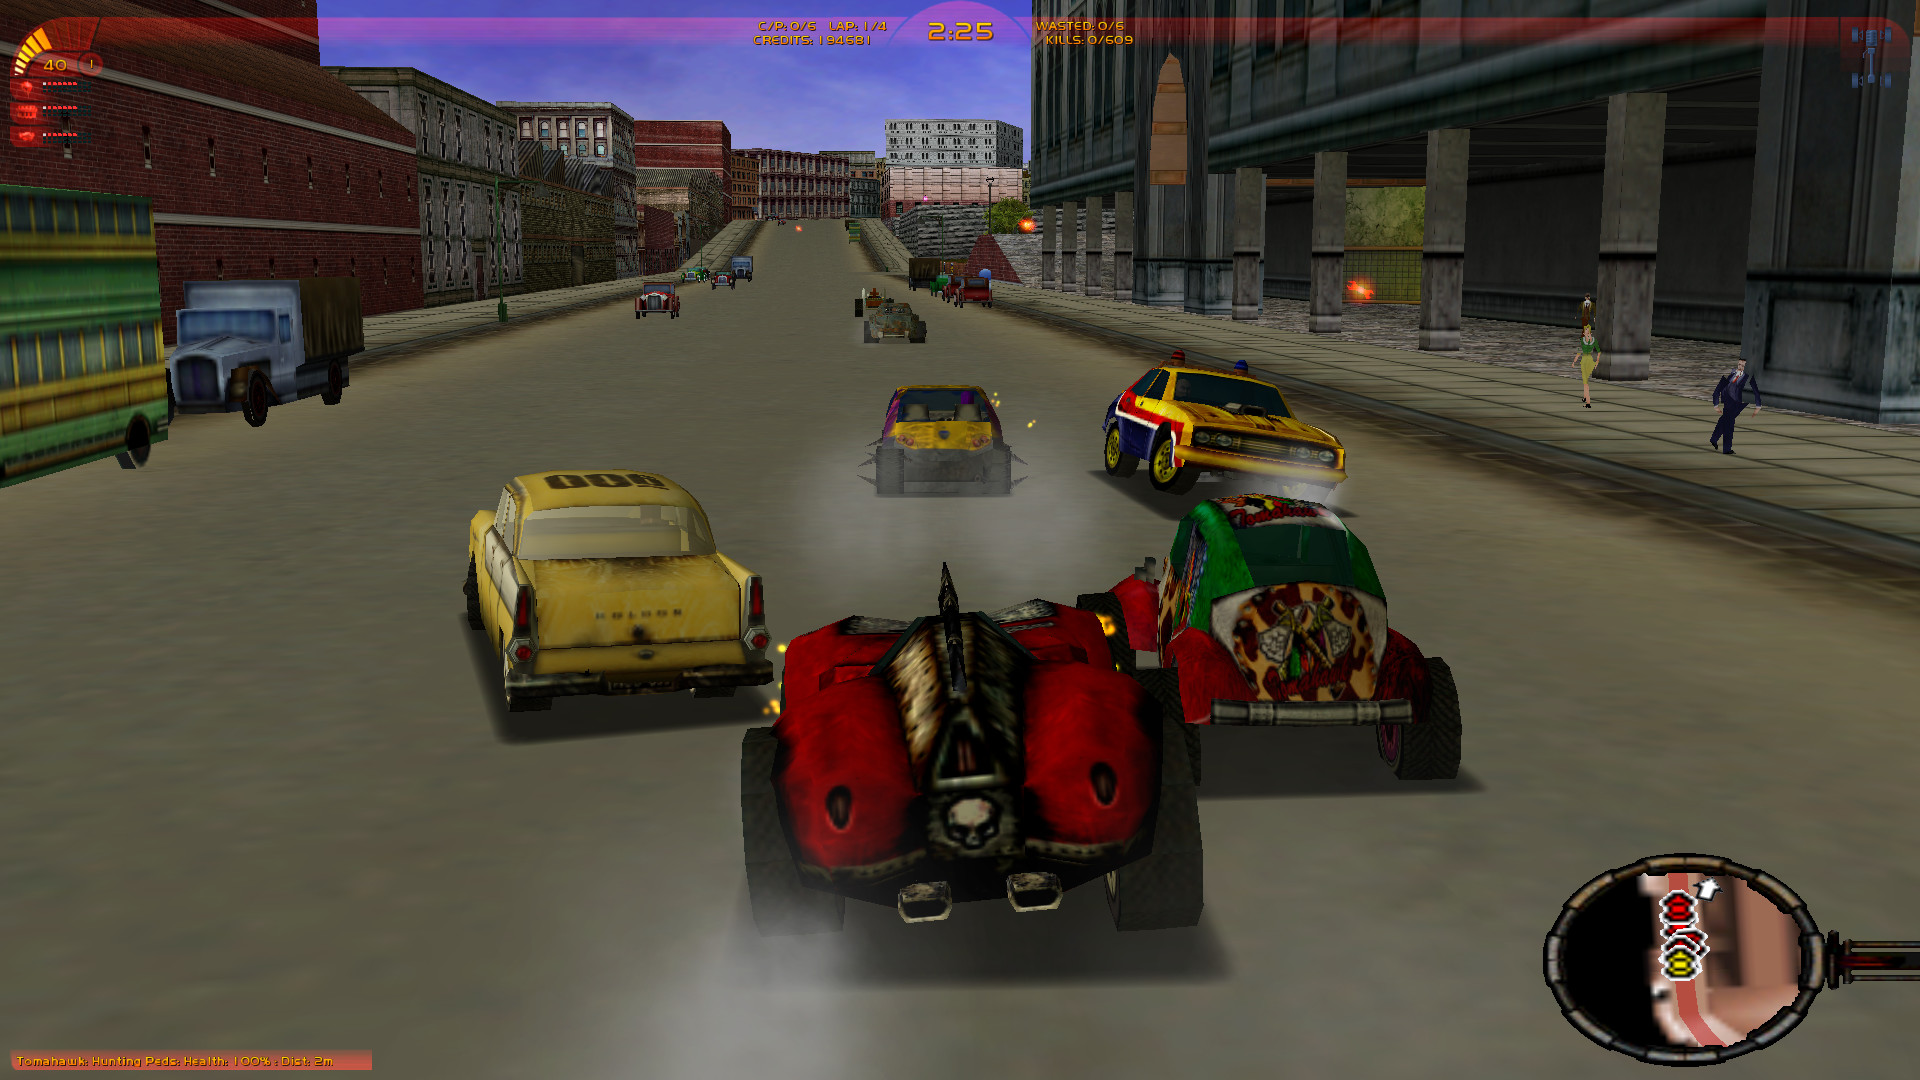 Carmageddon Tdr 2000 Download Full Game